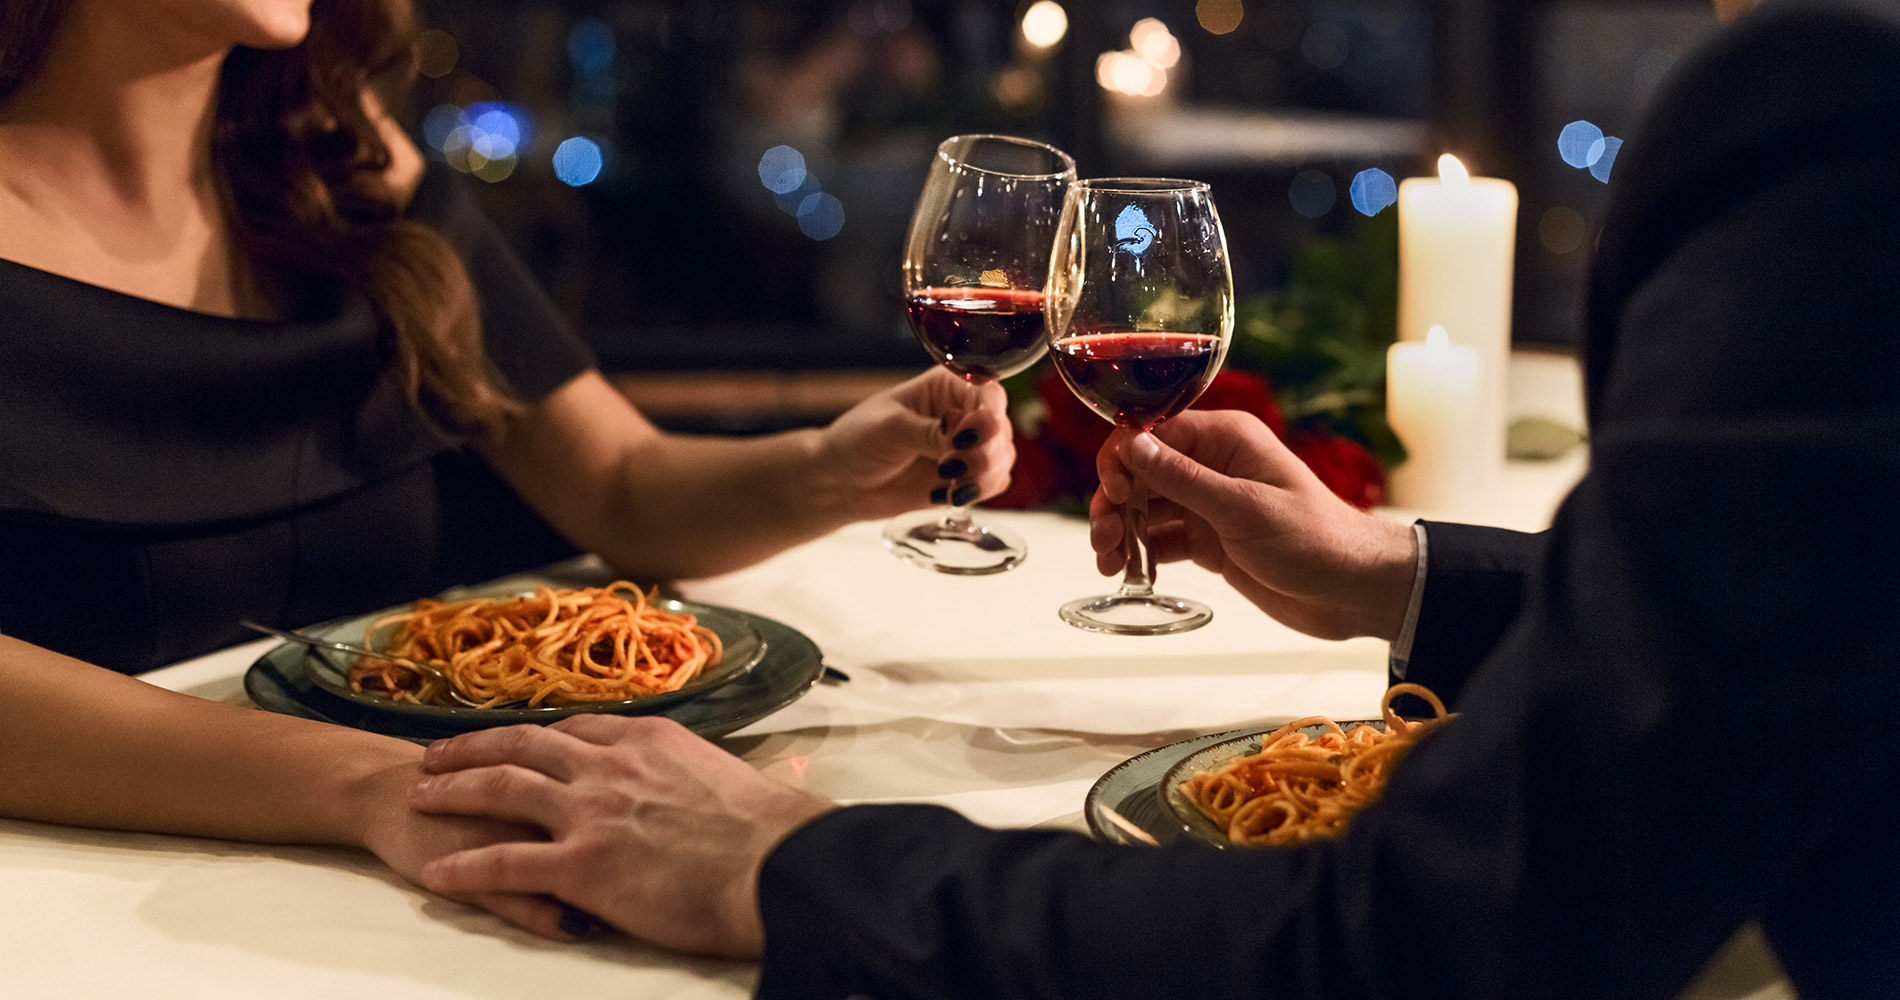 Couple élégant à table, avec des assiettes de spaghettis et des verres de vin rouge